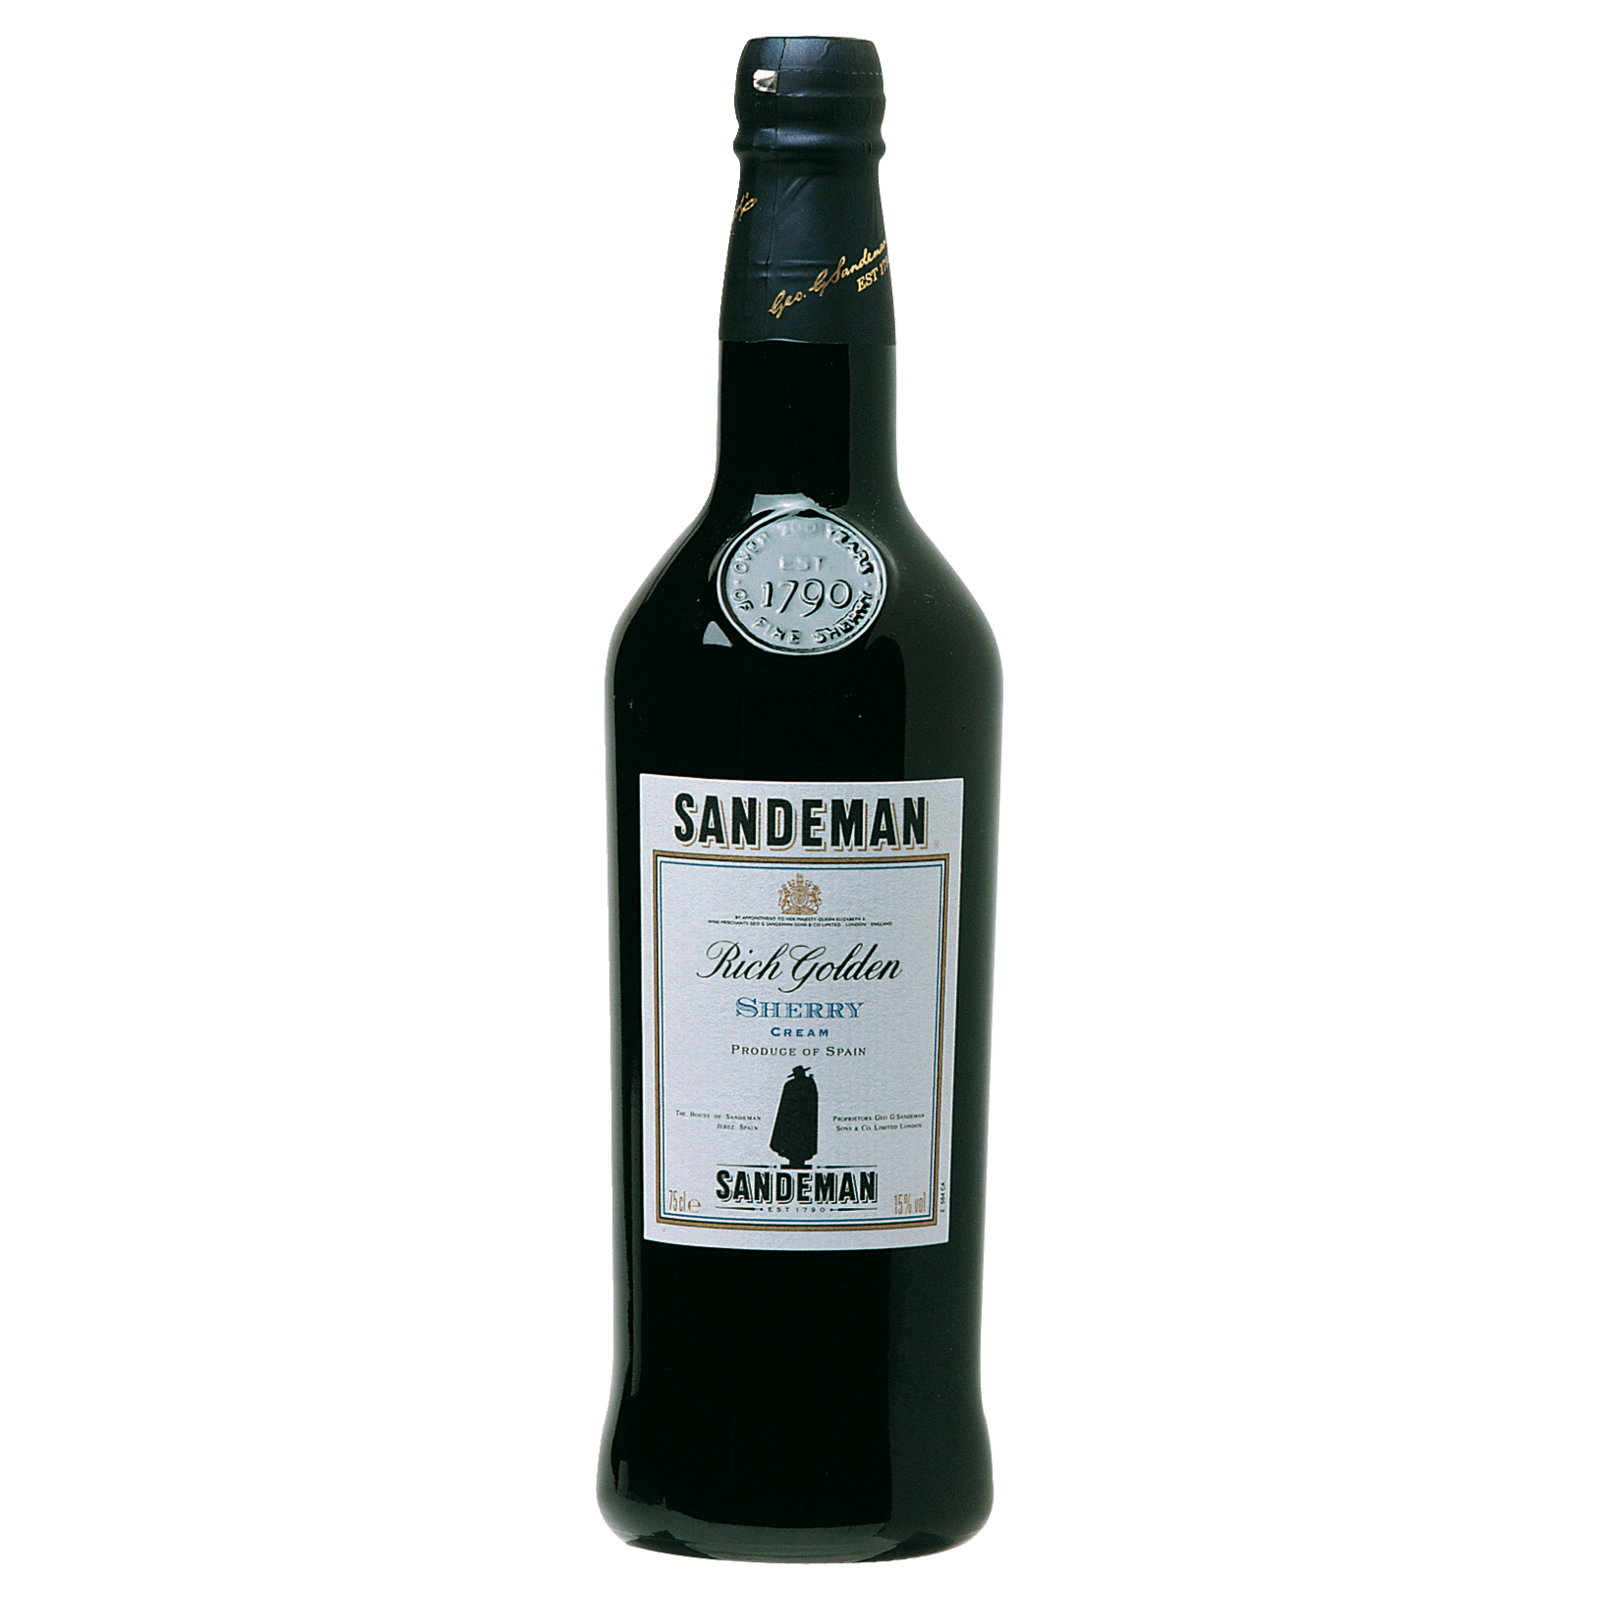 Likörwein POP Patras Mavrodaphne für von lieblich, 5,99€ Lidl